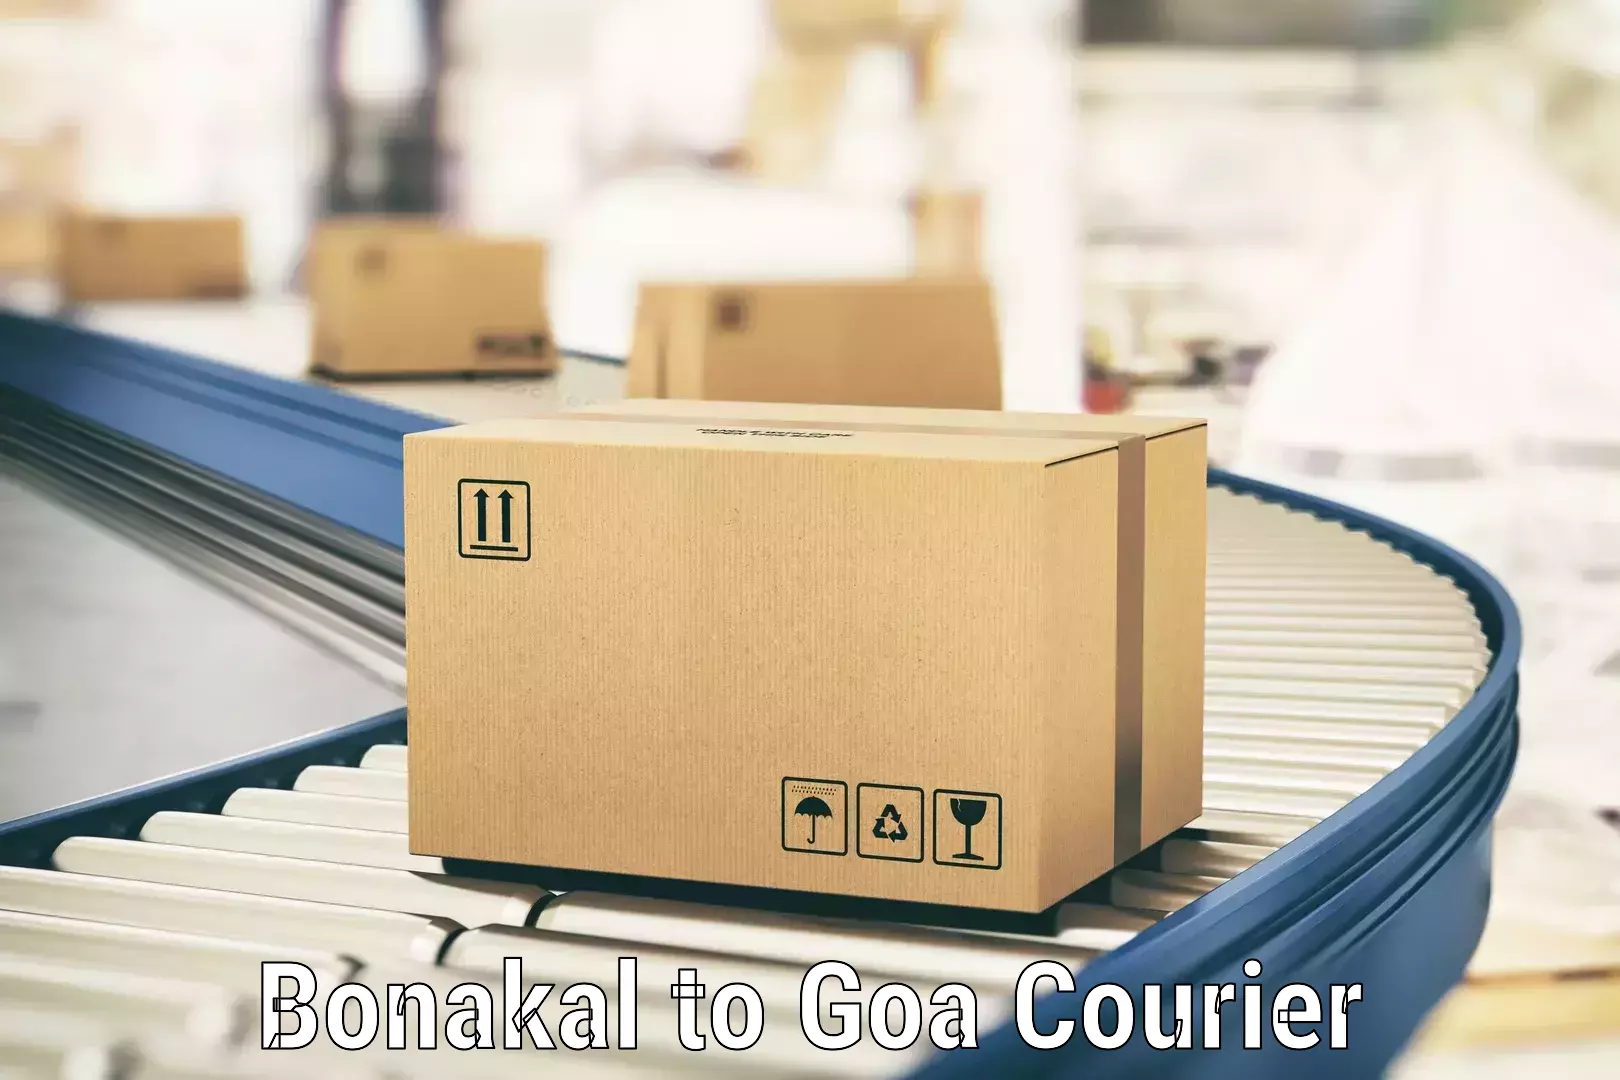 Package tracking Bonakal to Panjim